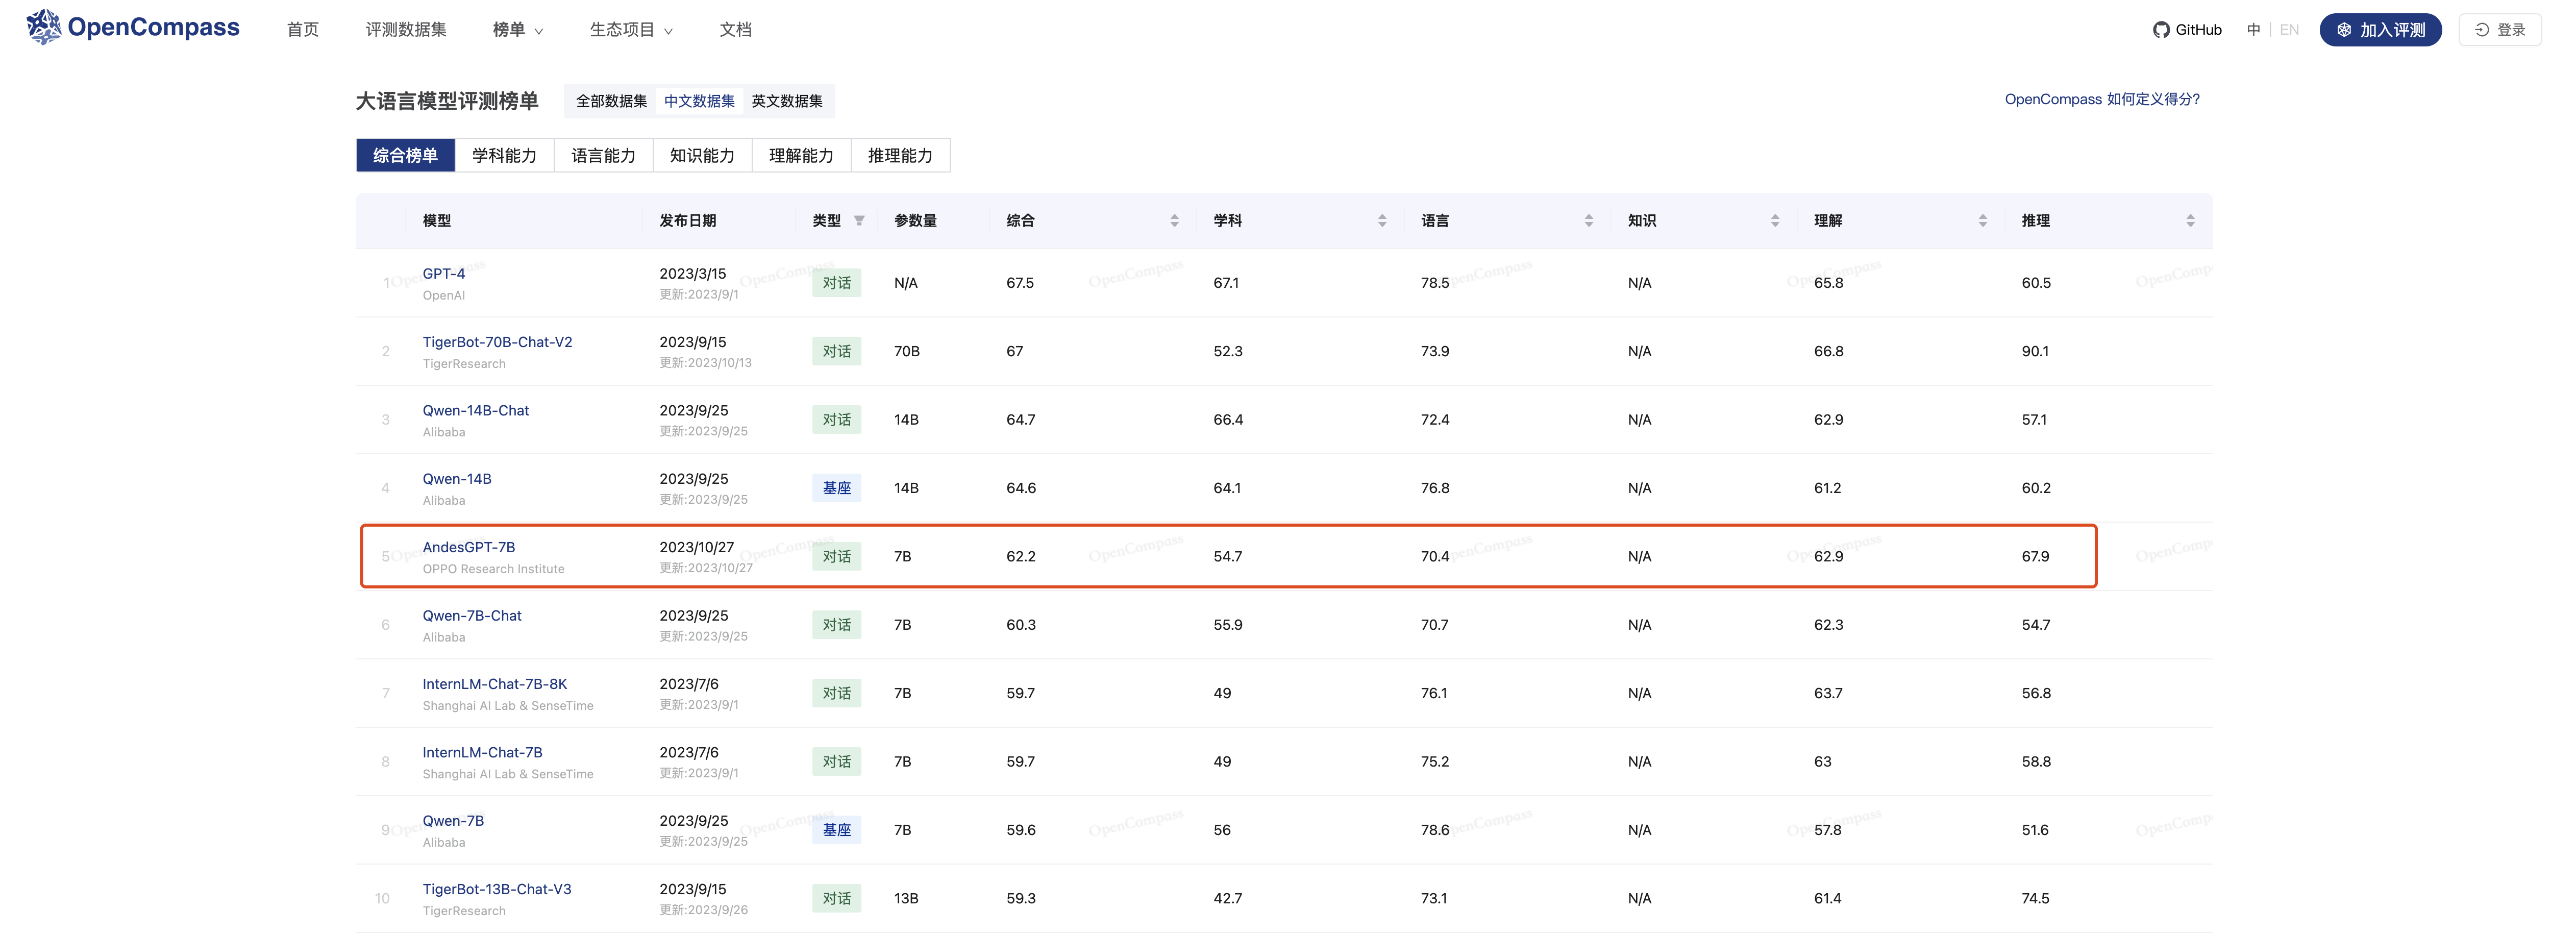 (OpenCompass大说话模子评测榜单-中语数据集 2023/10/30)